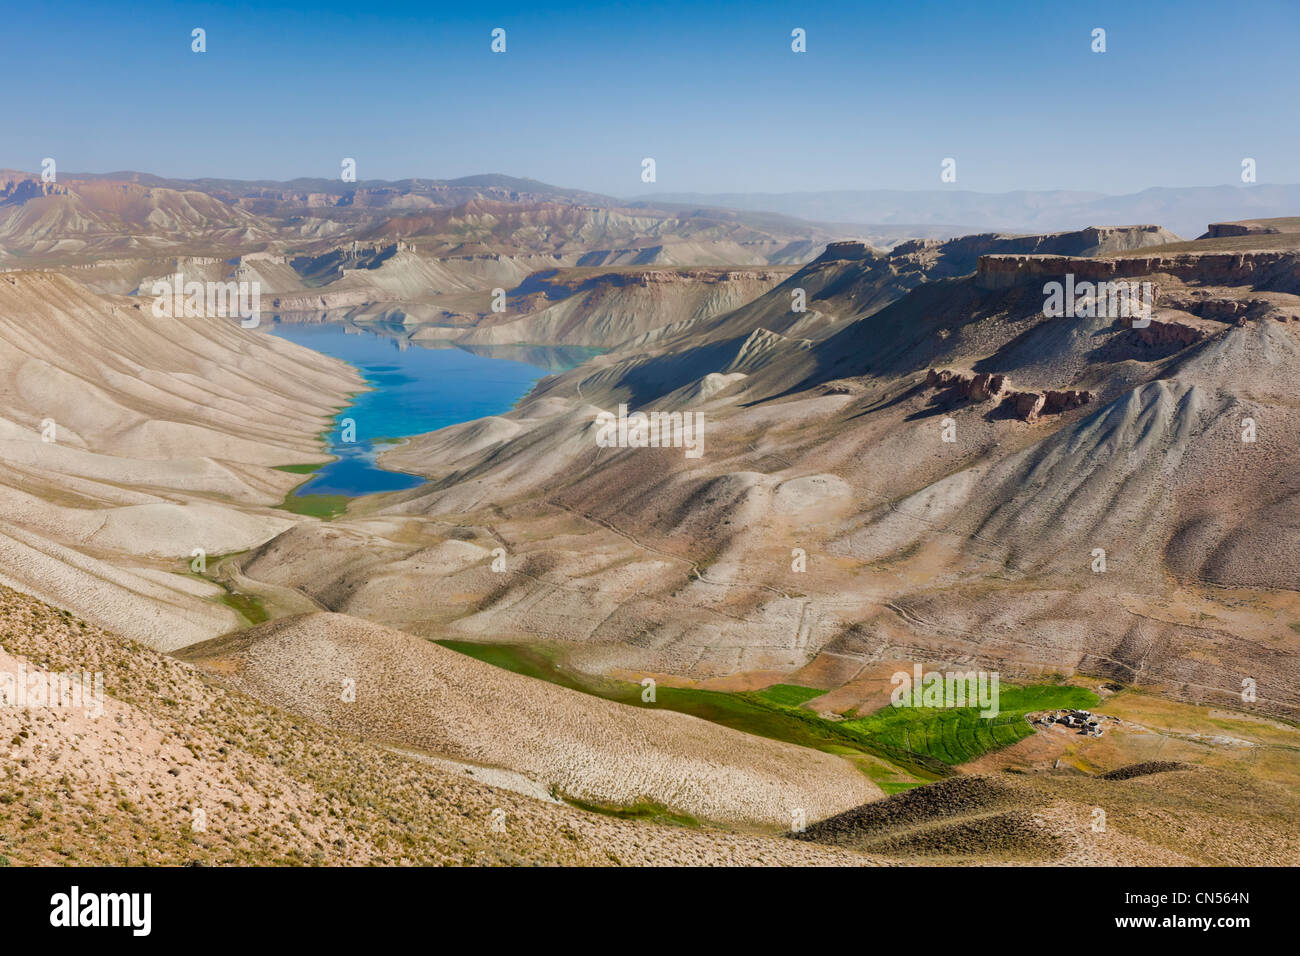 Afghanistan, Bamyian province, Band-e Amir, Band-e Haibat lake Stock Photo